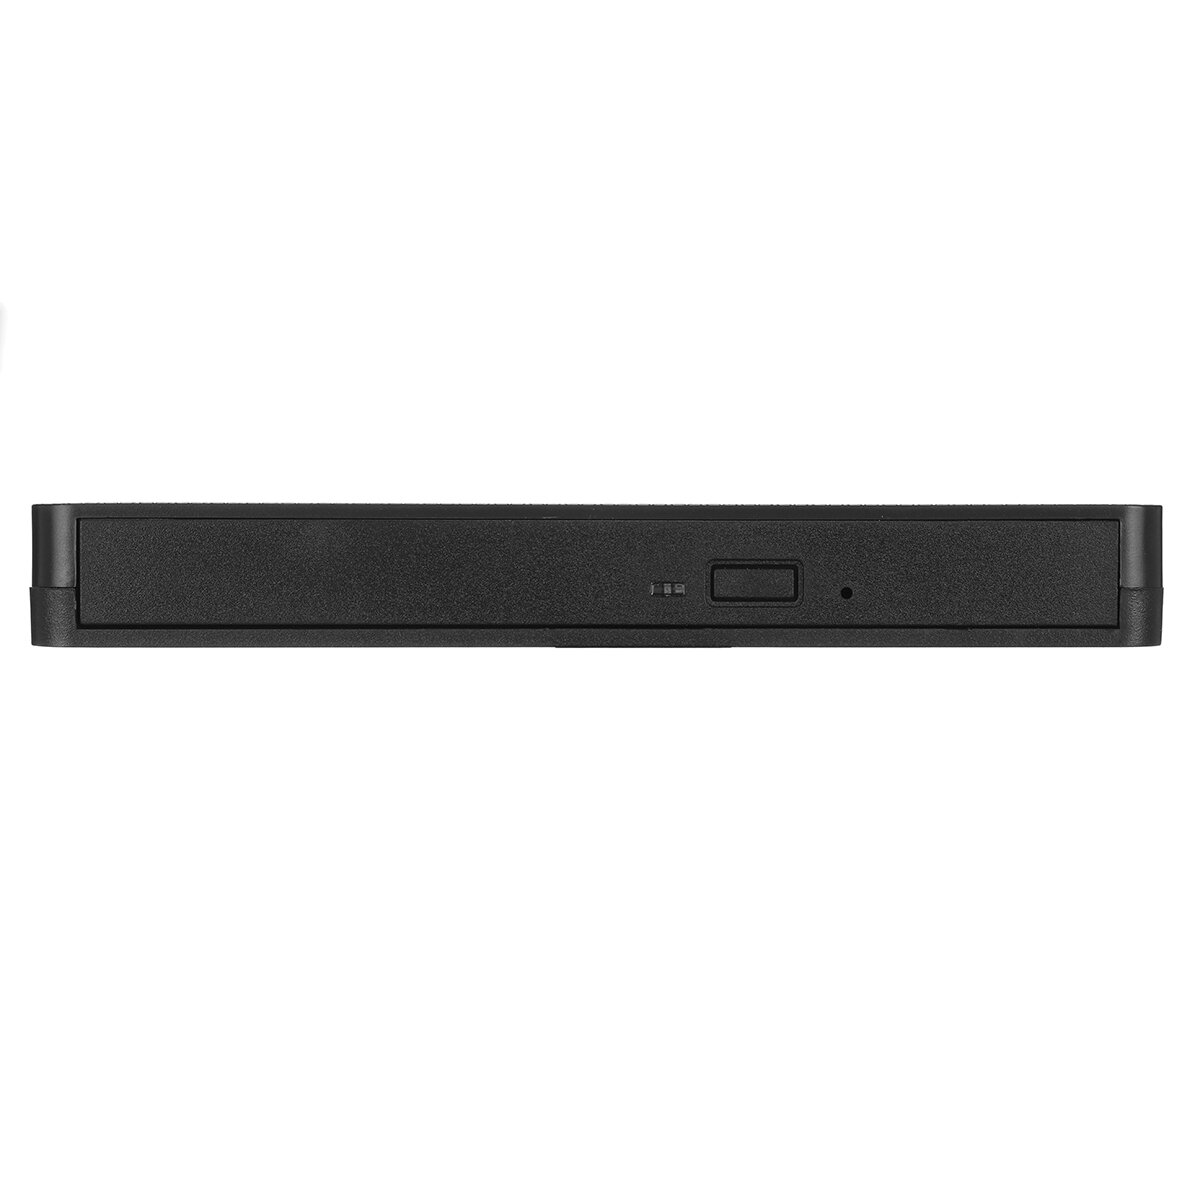 USB 3.0Type-C外付け光学ドライブDVD-RWプレーヤーCDDVDバーナーライターリライターPCラップトップOS用データ転送Windows7 / 8/10